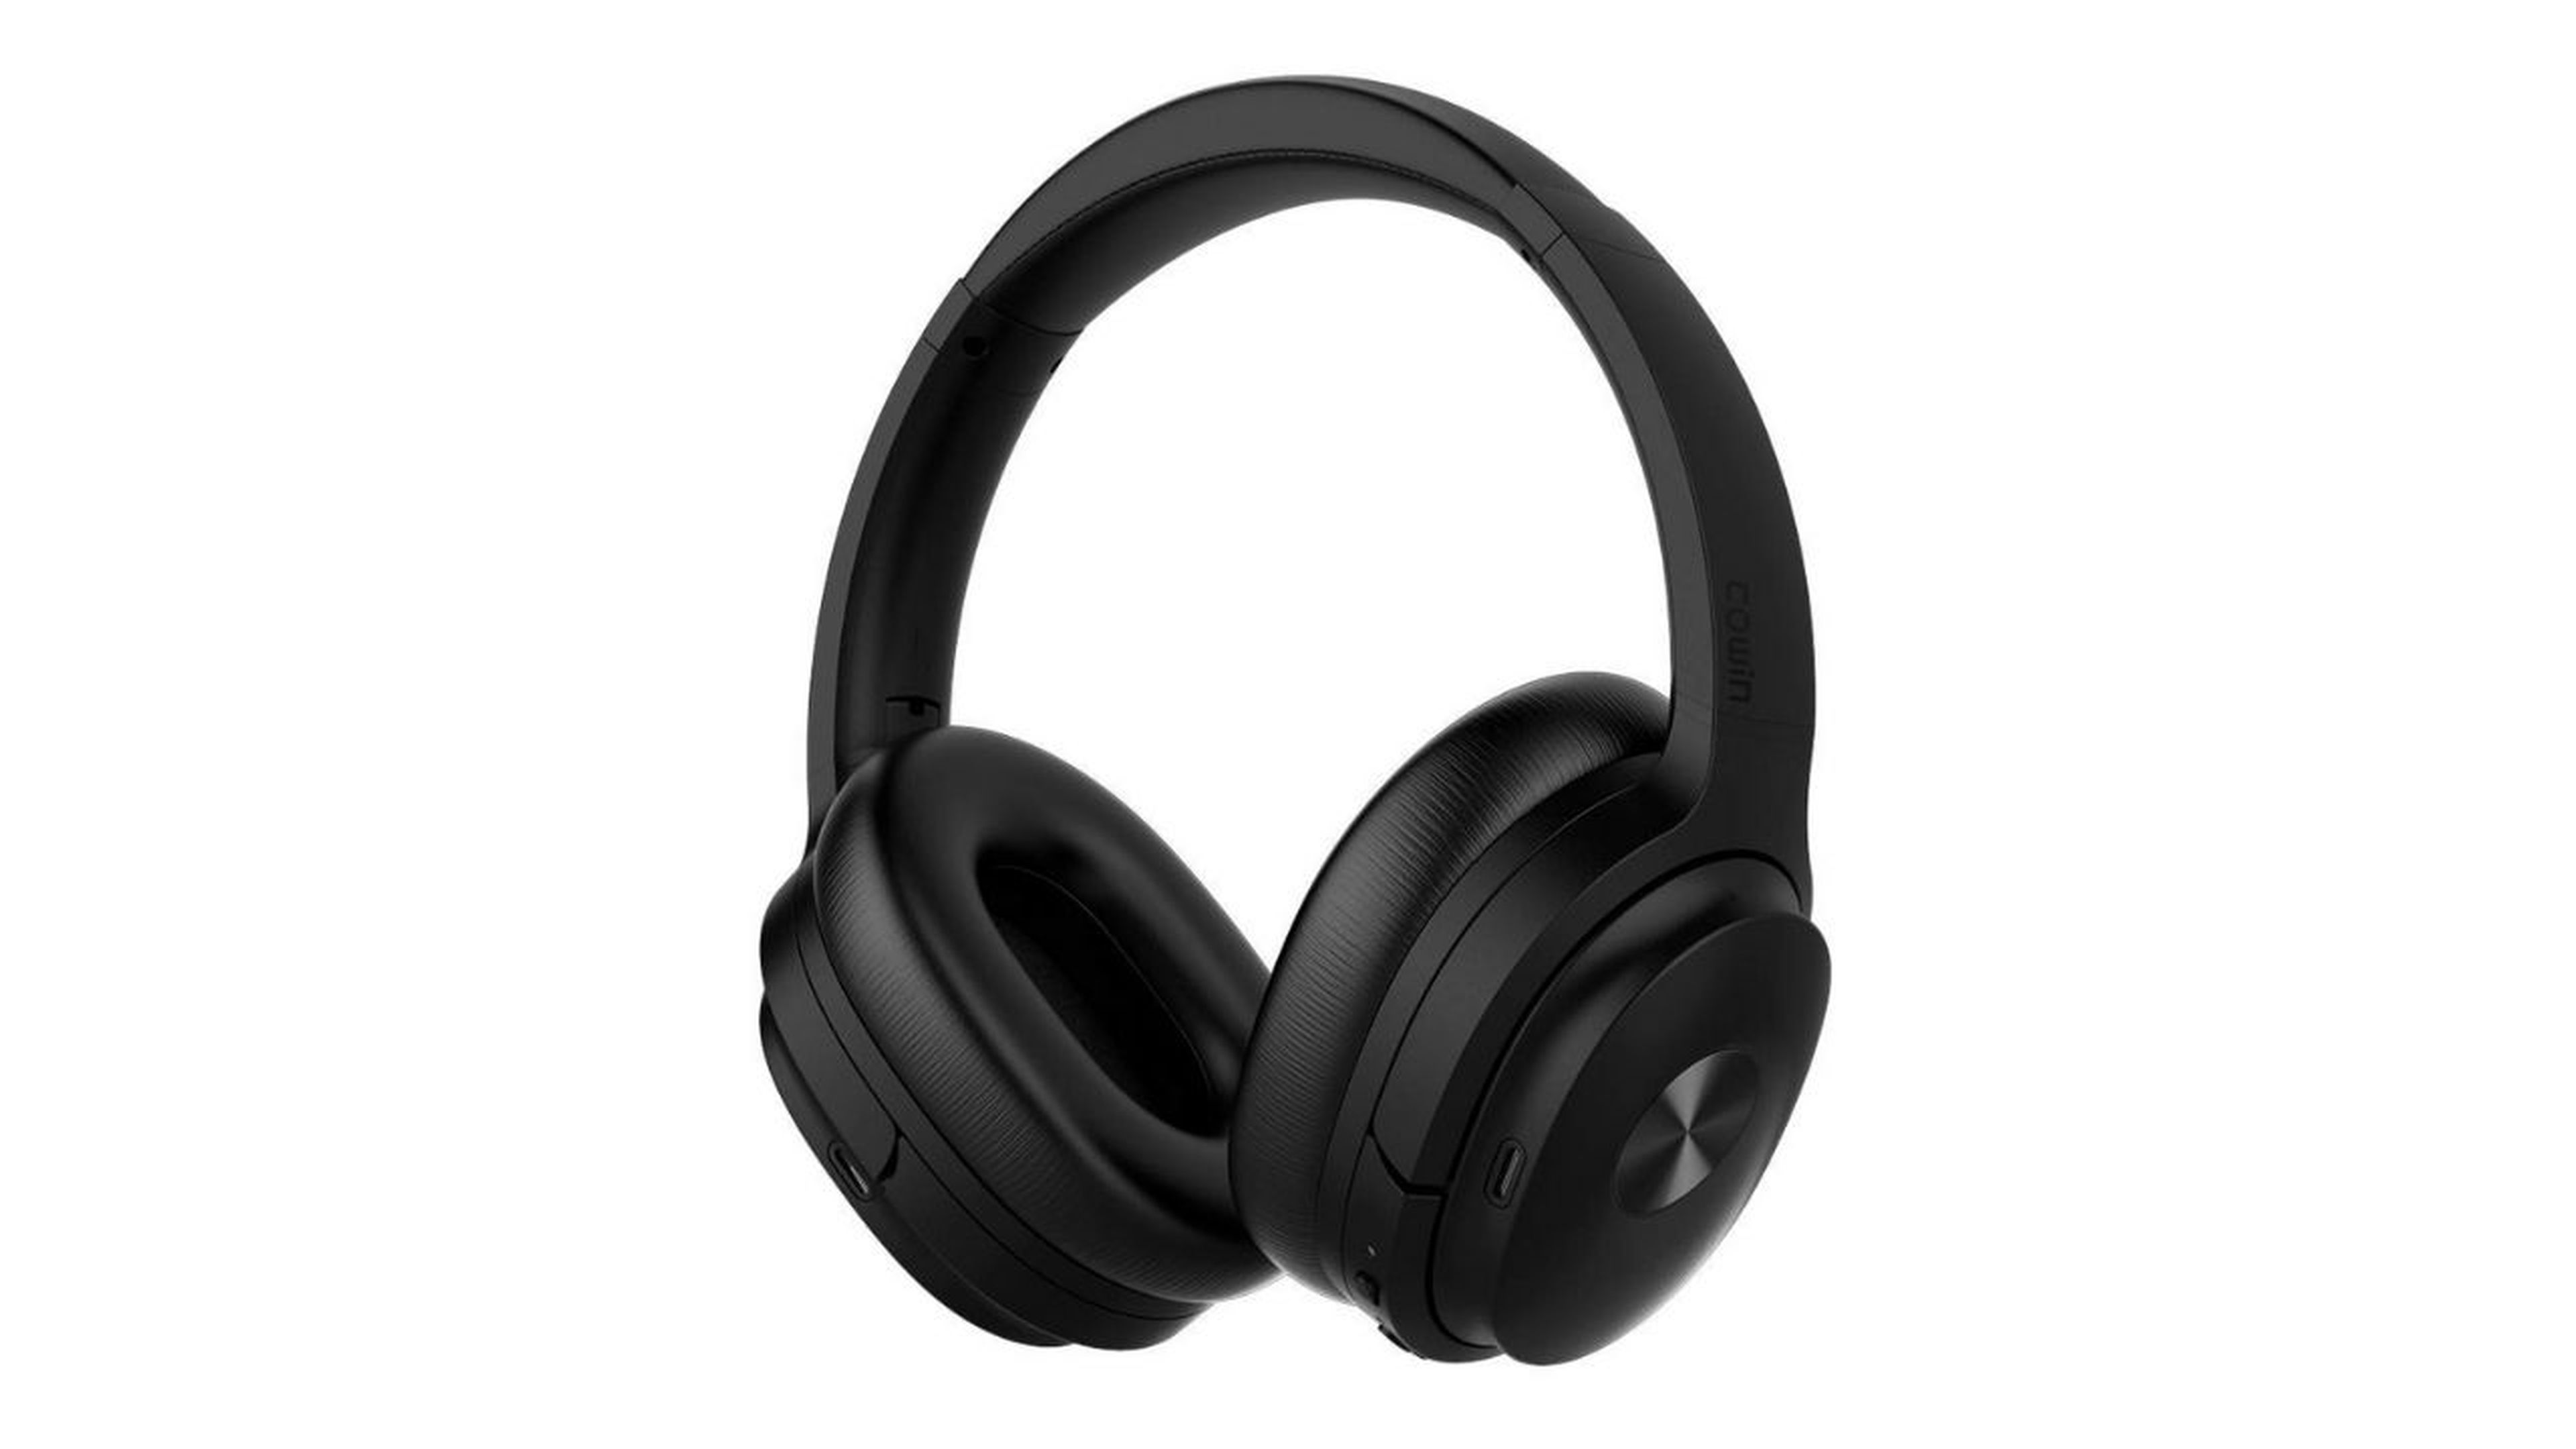 Oferta Amazon: auriculares Bluetooht con cancelación de ruido (-40%)